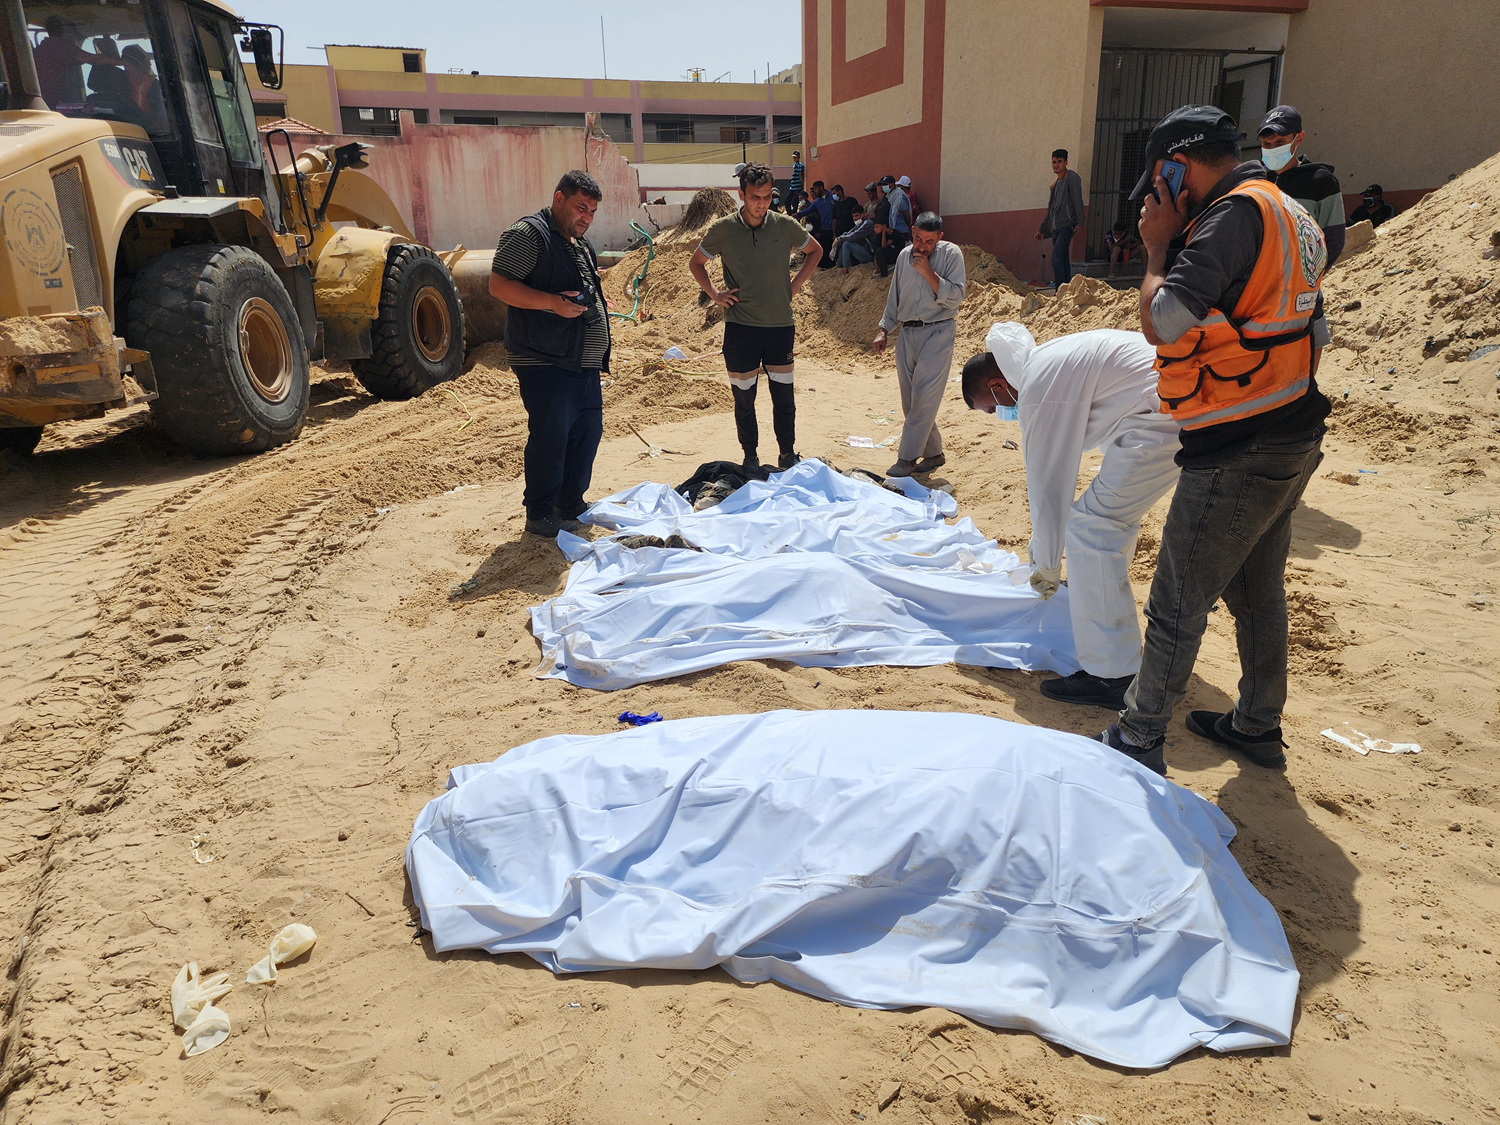 Nasır Hastanesi'nde soykırımcı İsrail vahşeti! 51 Gazzelinin cesedi daha çıkarıldı